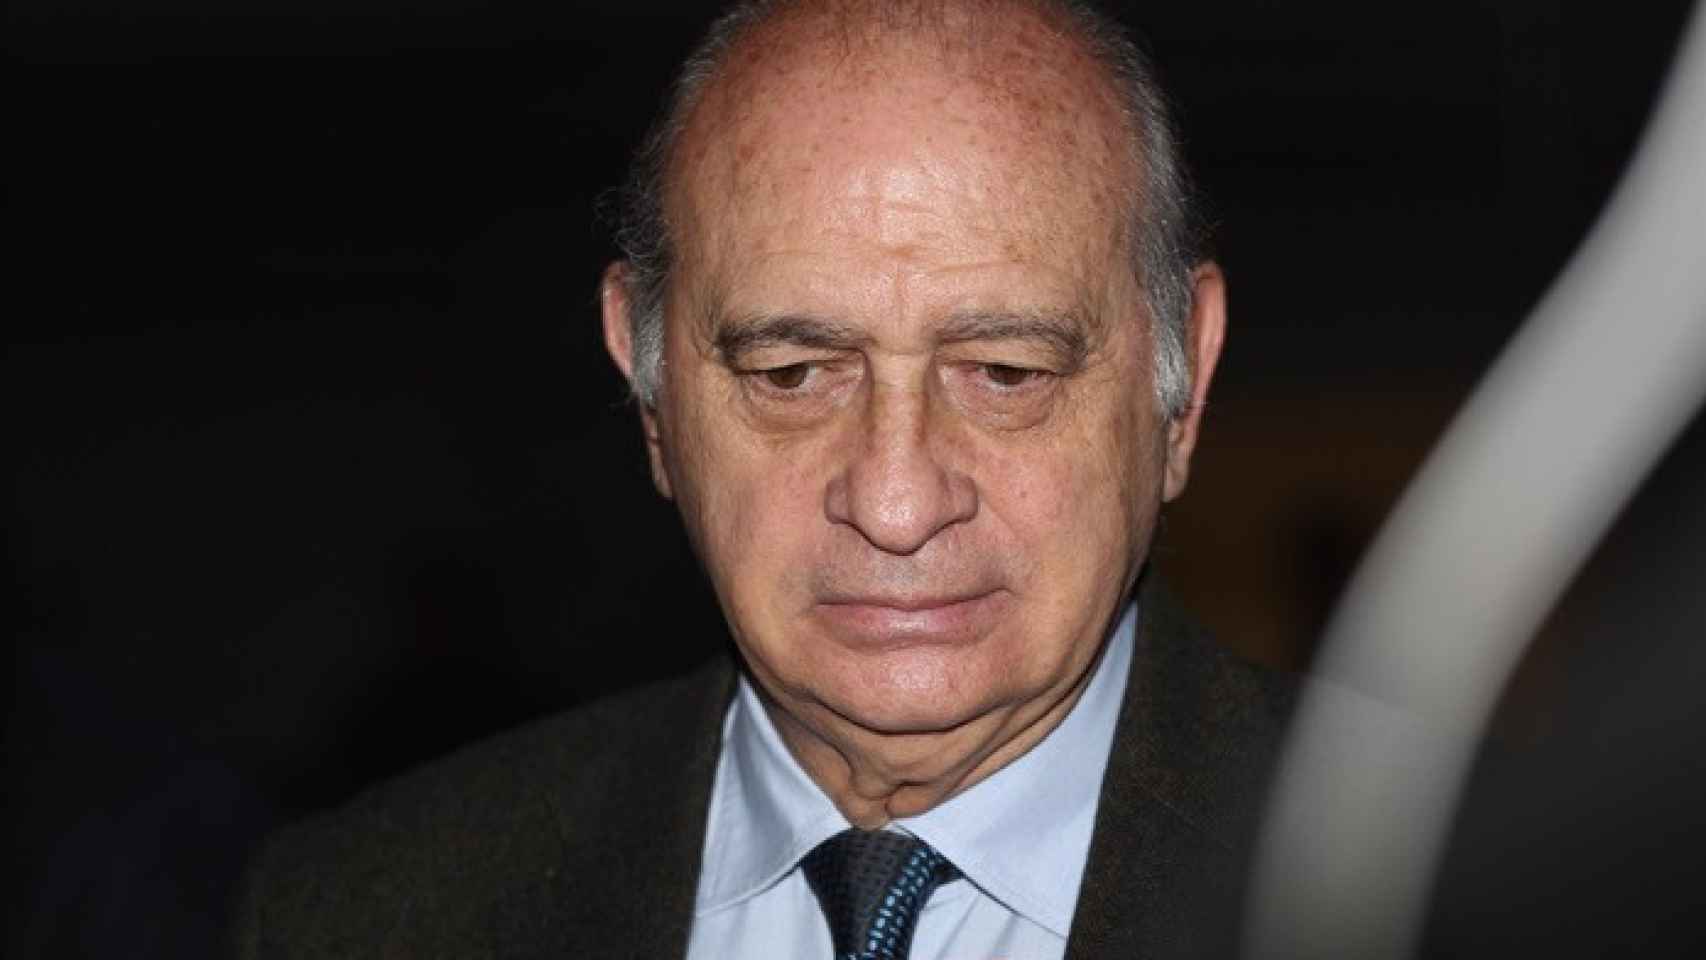 Jorge Fernández Díaz, en una imagen de archivo.